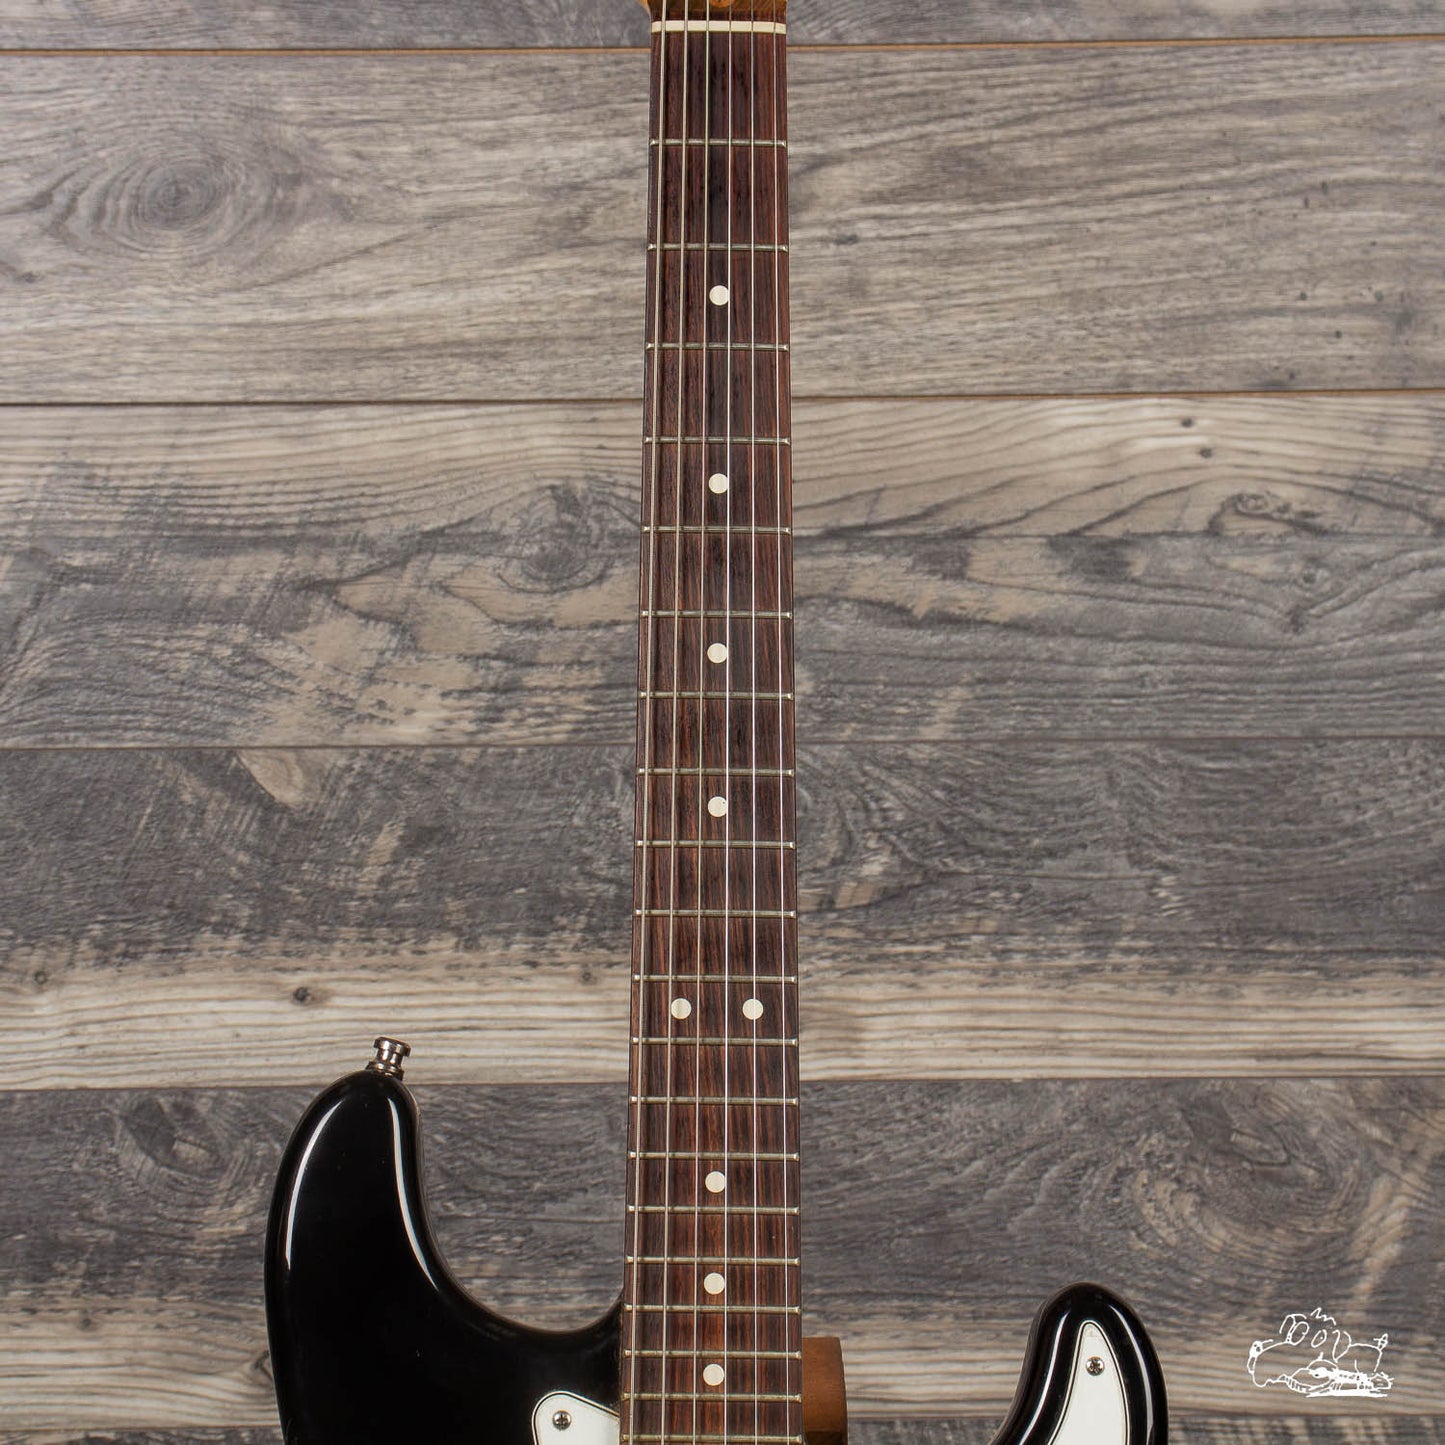 1994 Fender Stratocaster